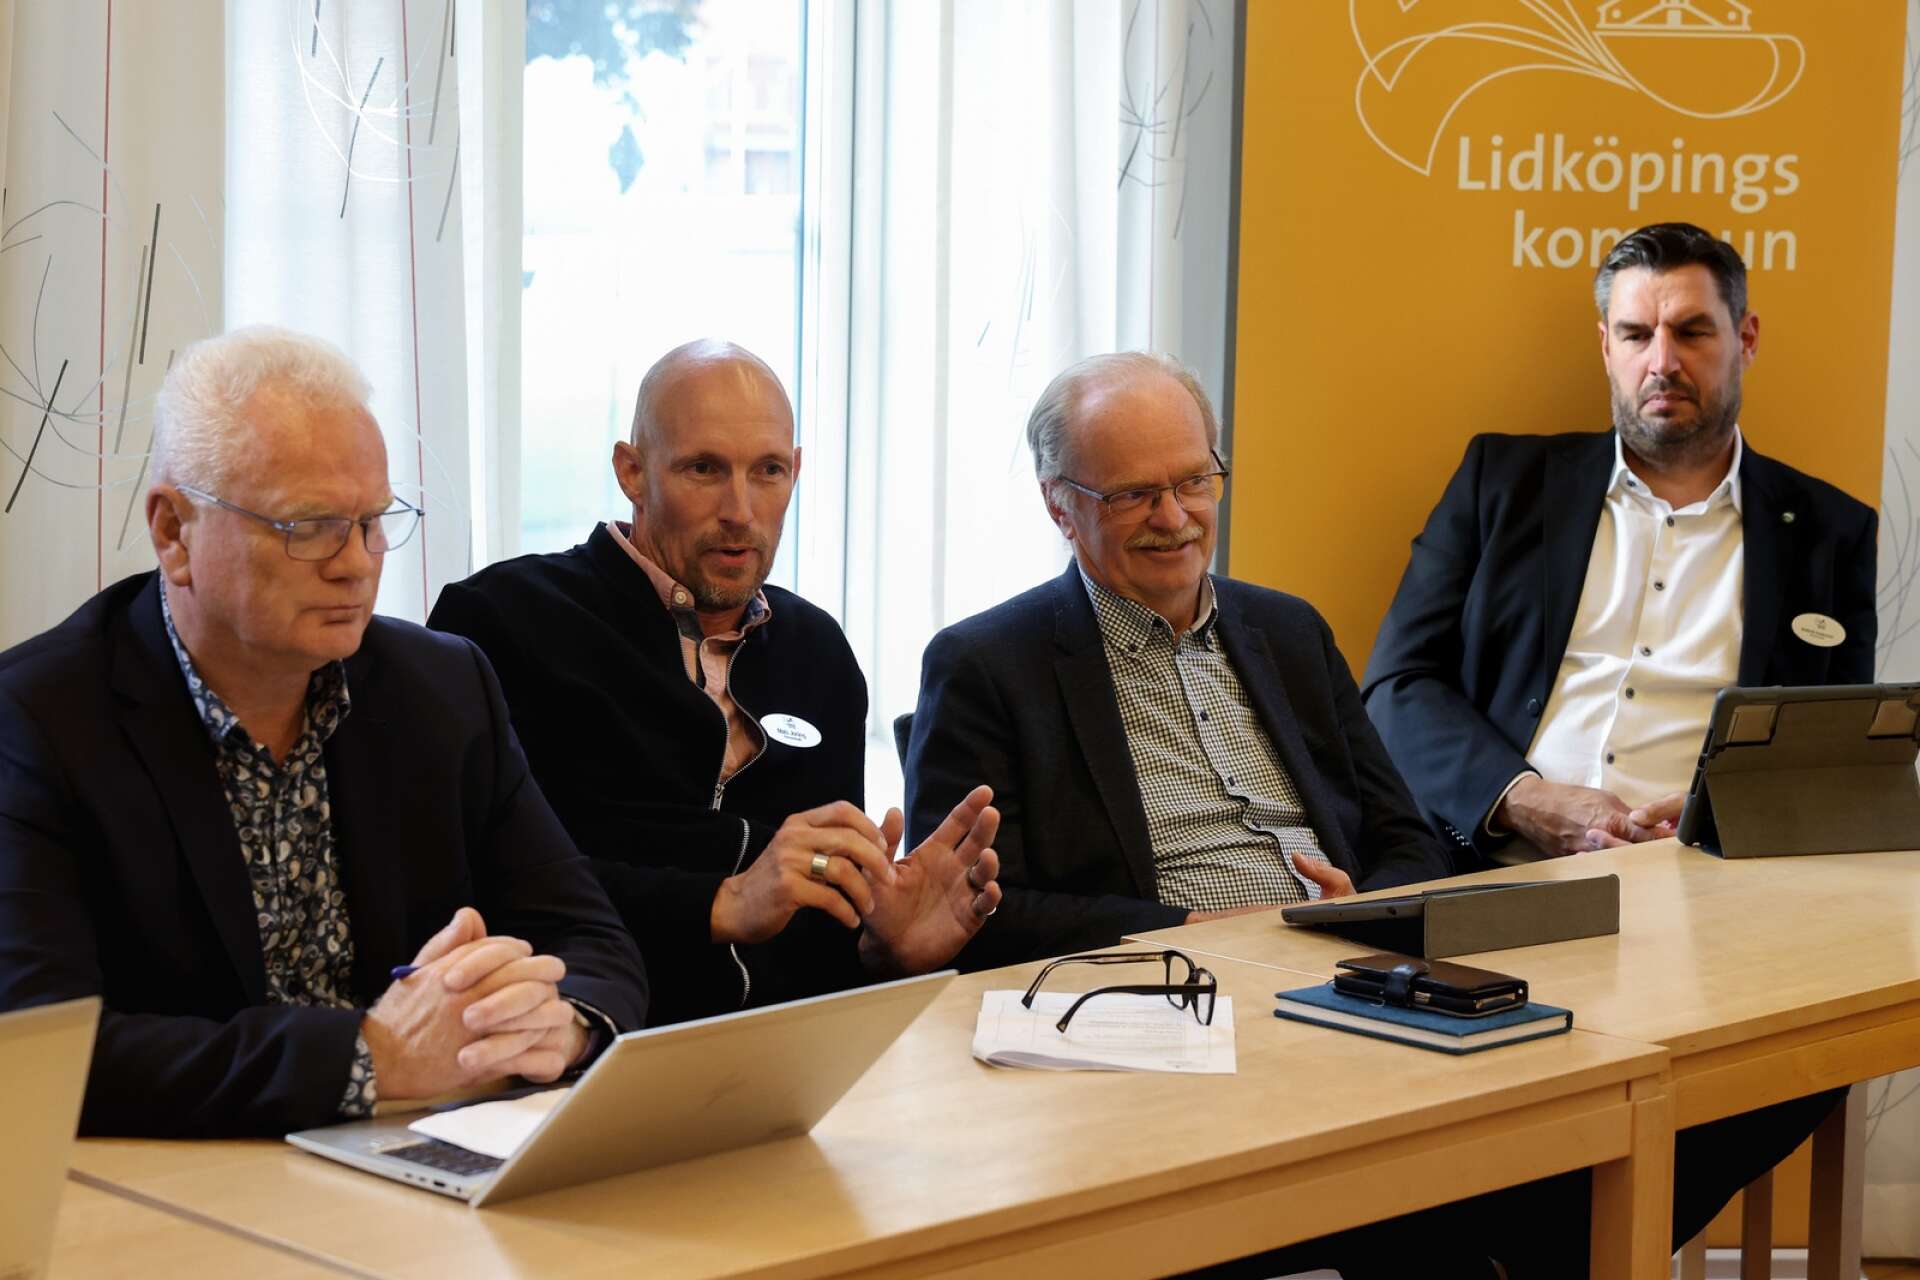 Roberth Andersson (SD) sitter lite avsides och tittar på den styrande politiska trion i Lidköping – Pär Johnson (L), Mats Joräng (M), och Tommy Larsson (KD). Han accepterar inte en styrning utan M i ledande roll.